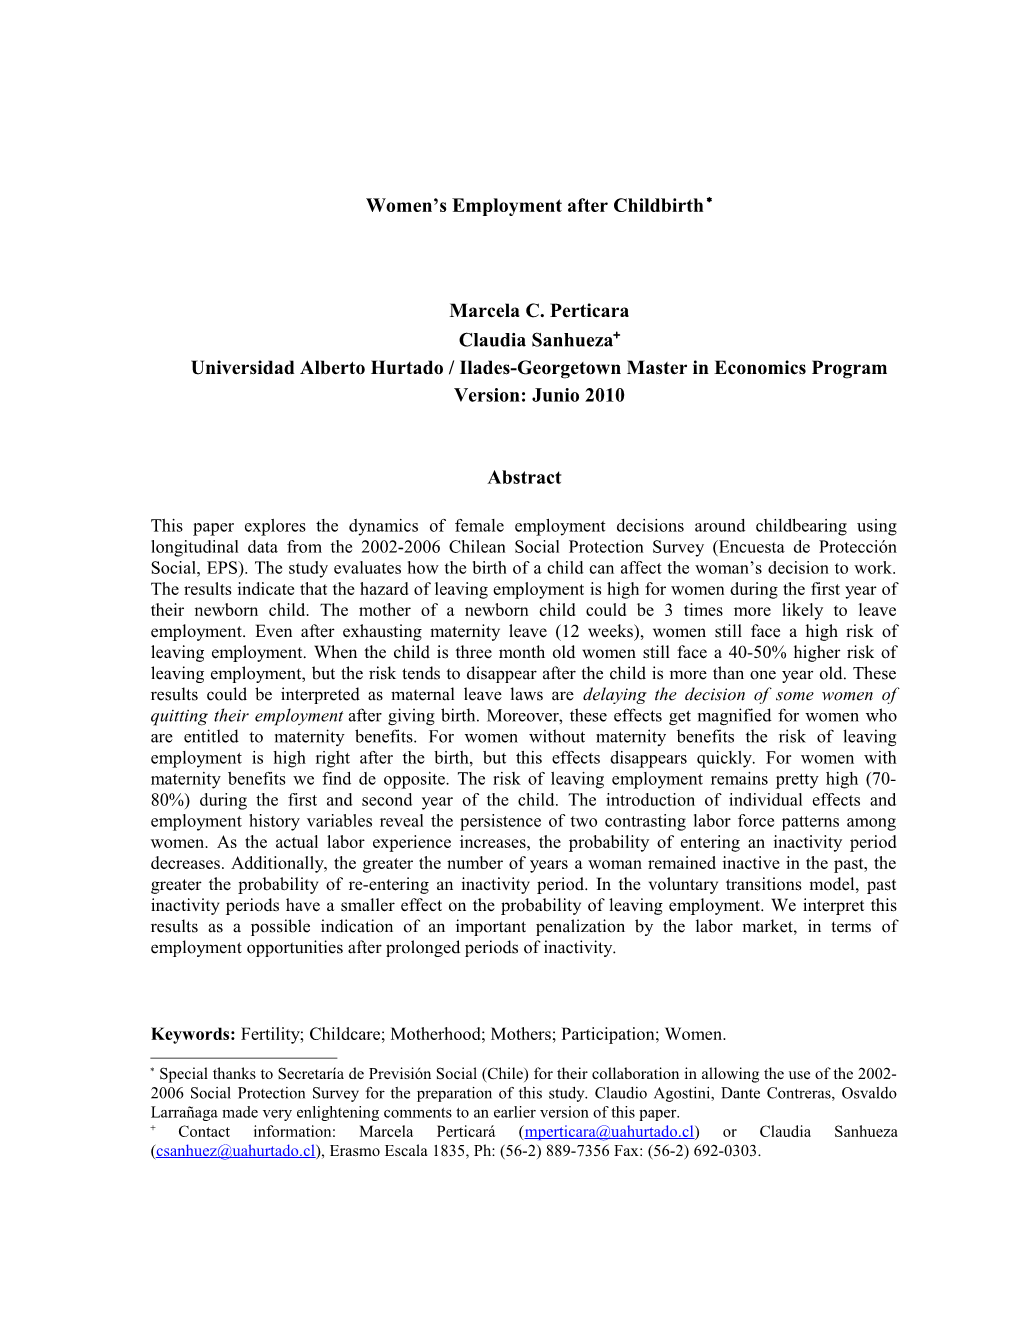 Women S Employment After Childbirth